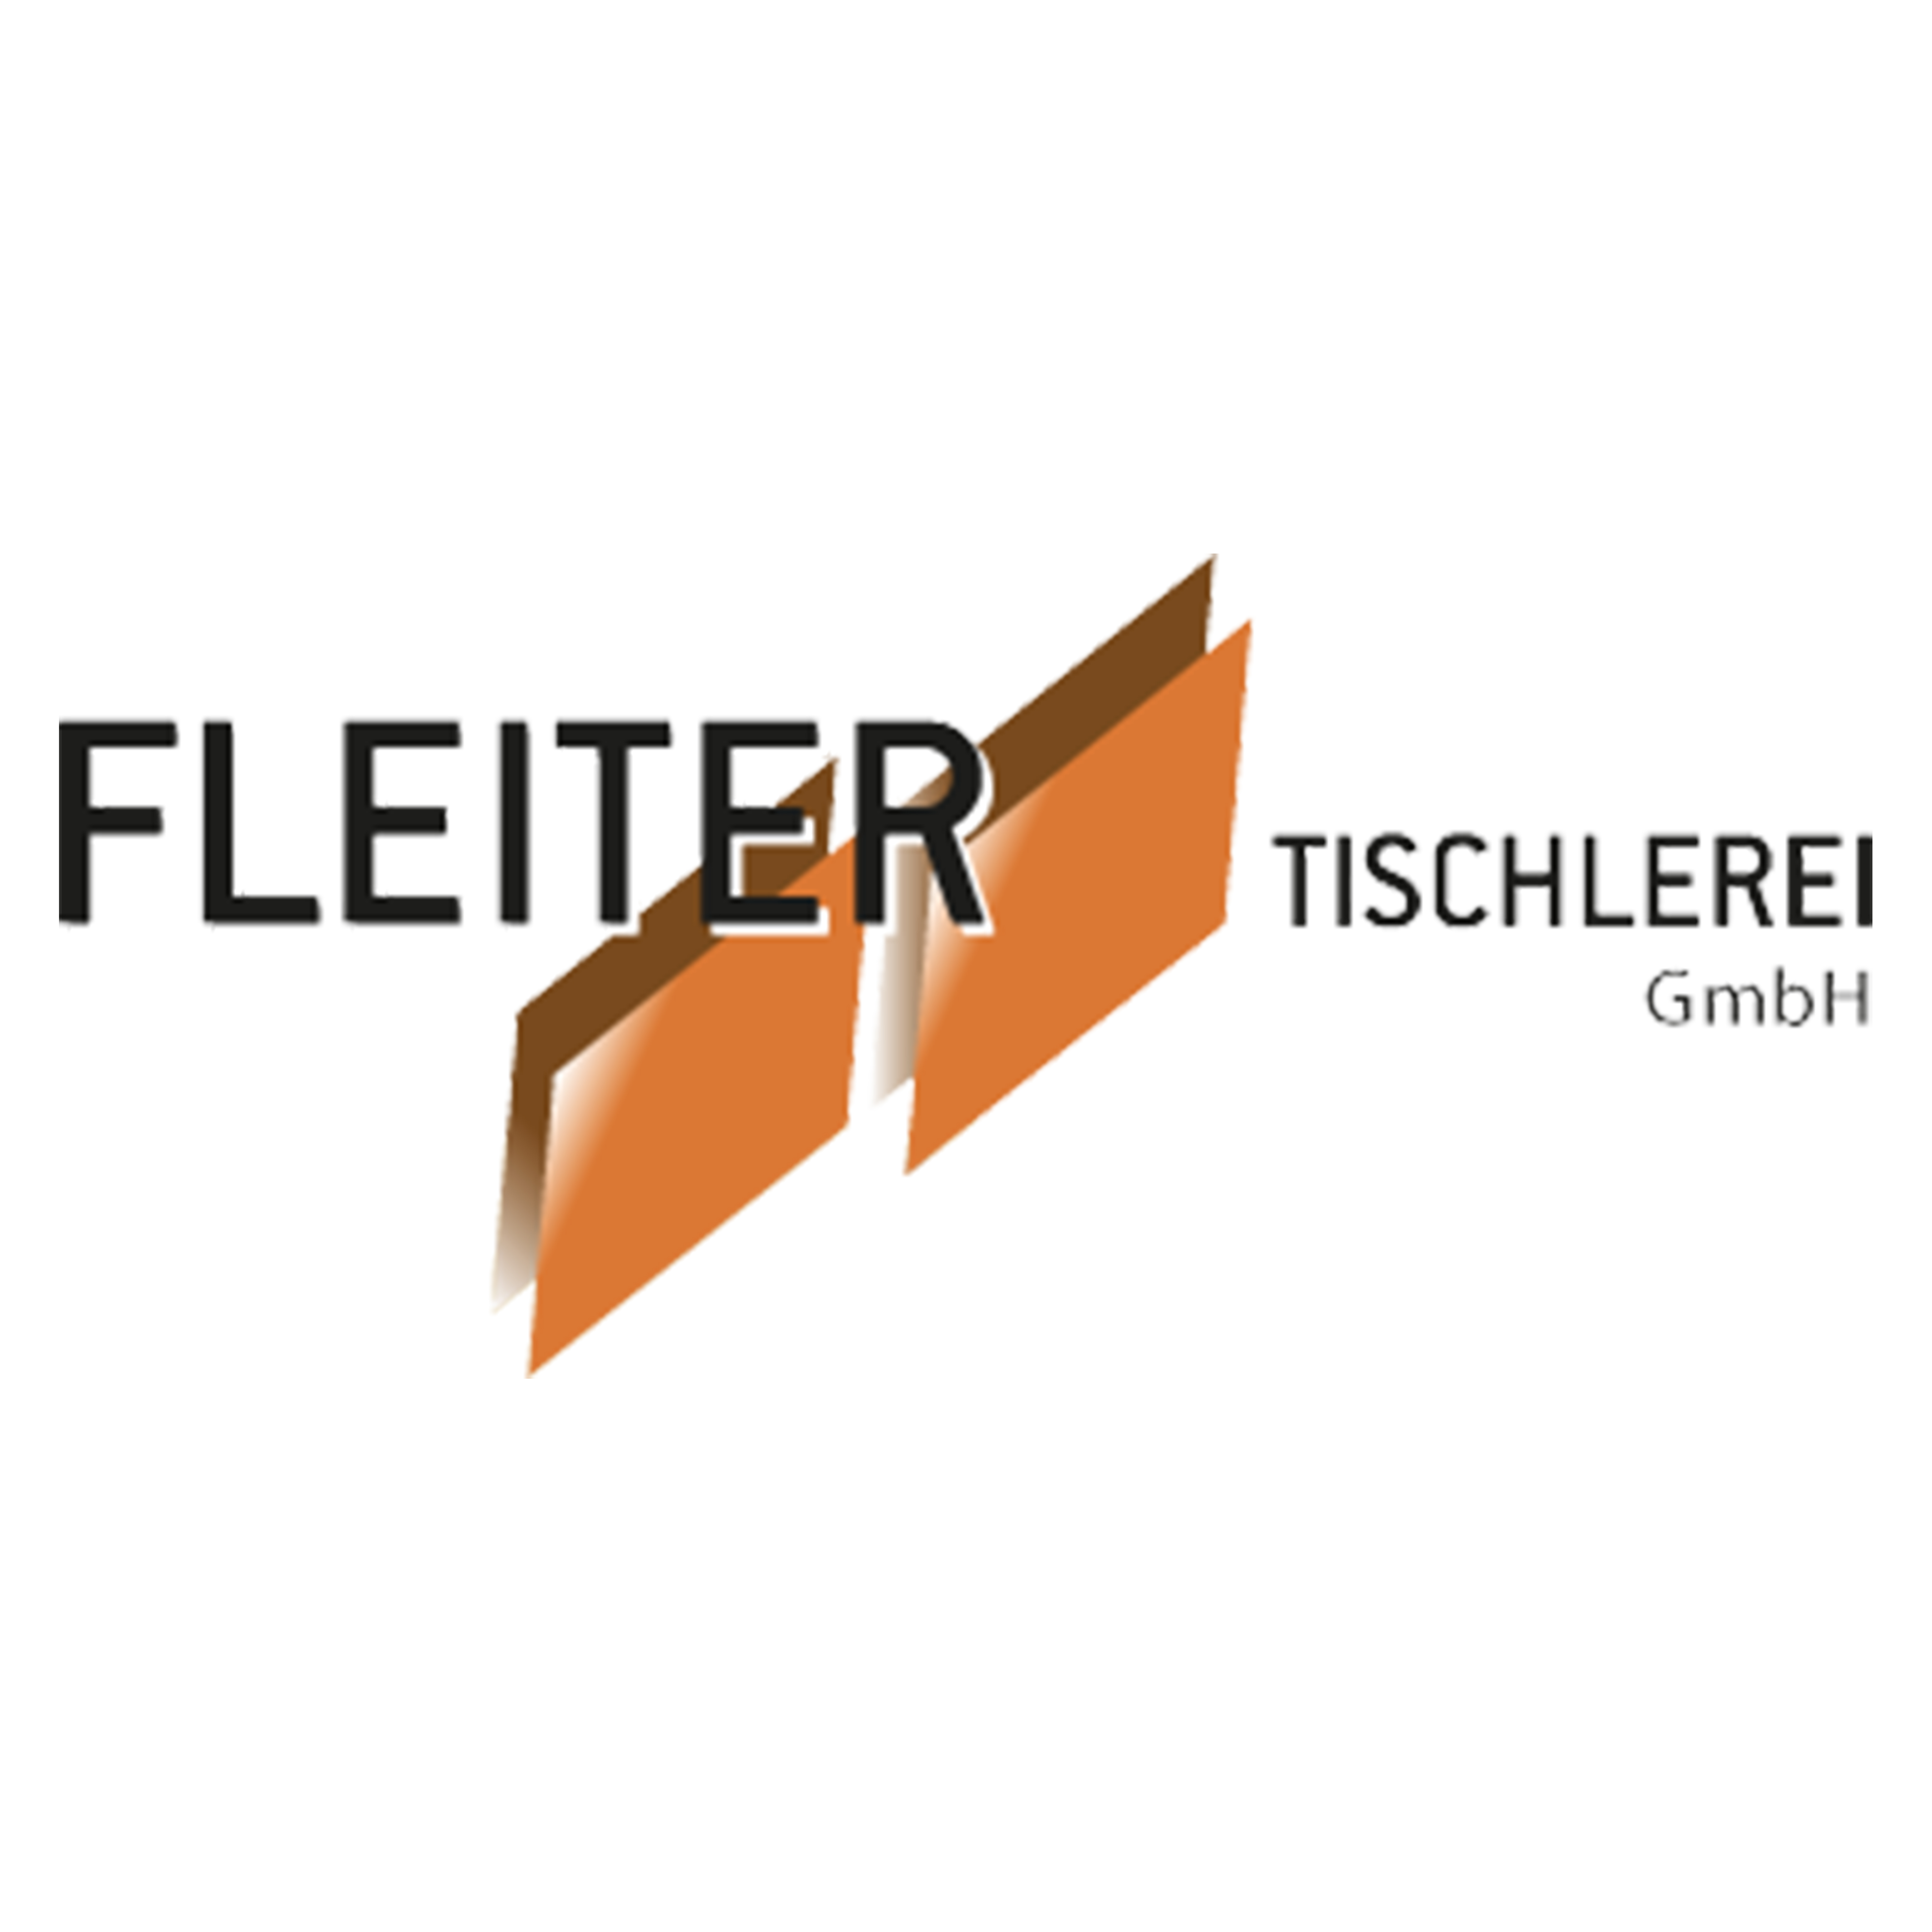 Logo Tischlerei Fleiter GmbH